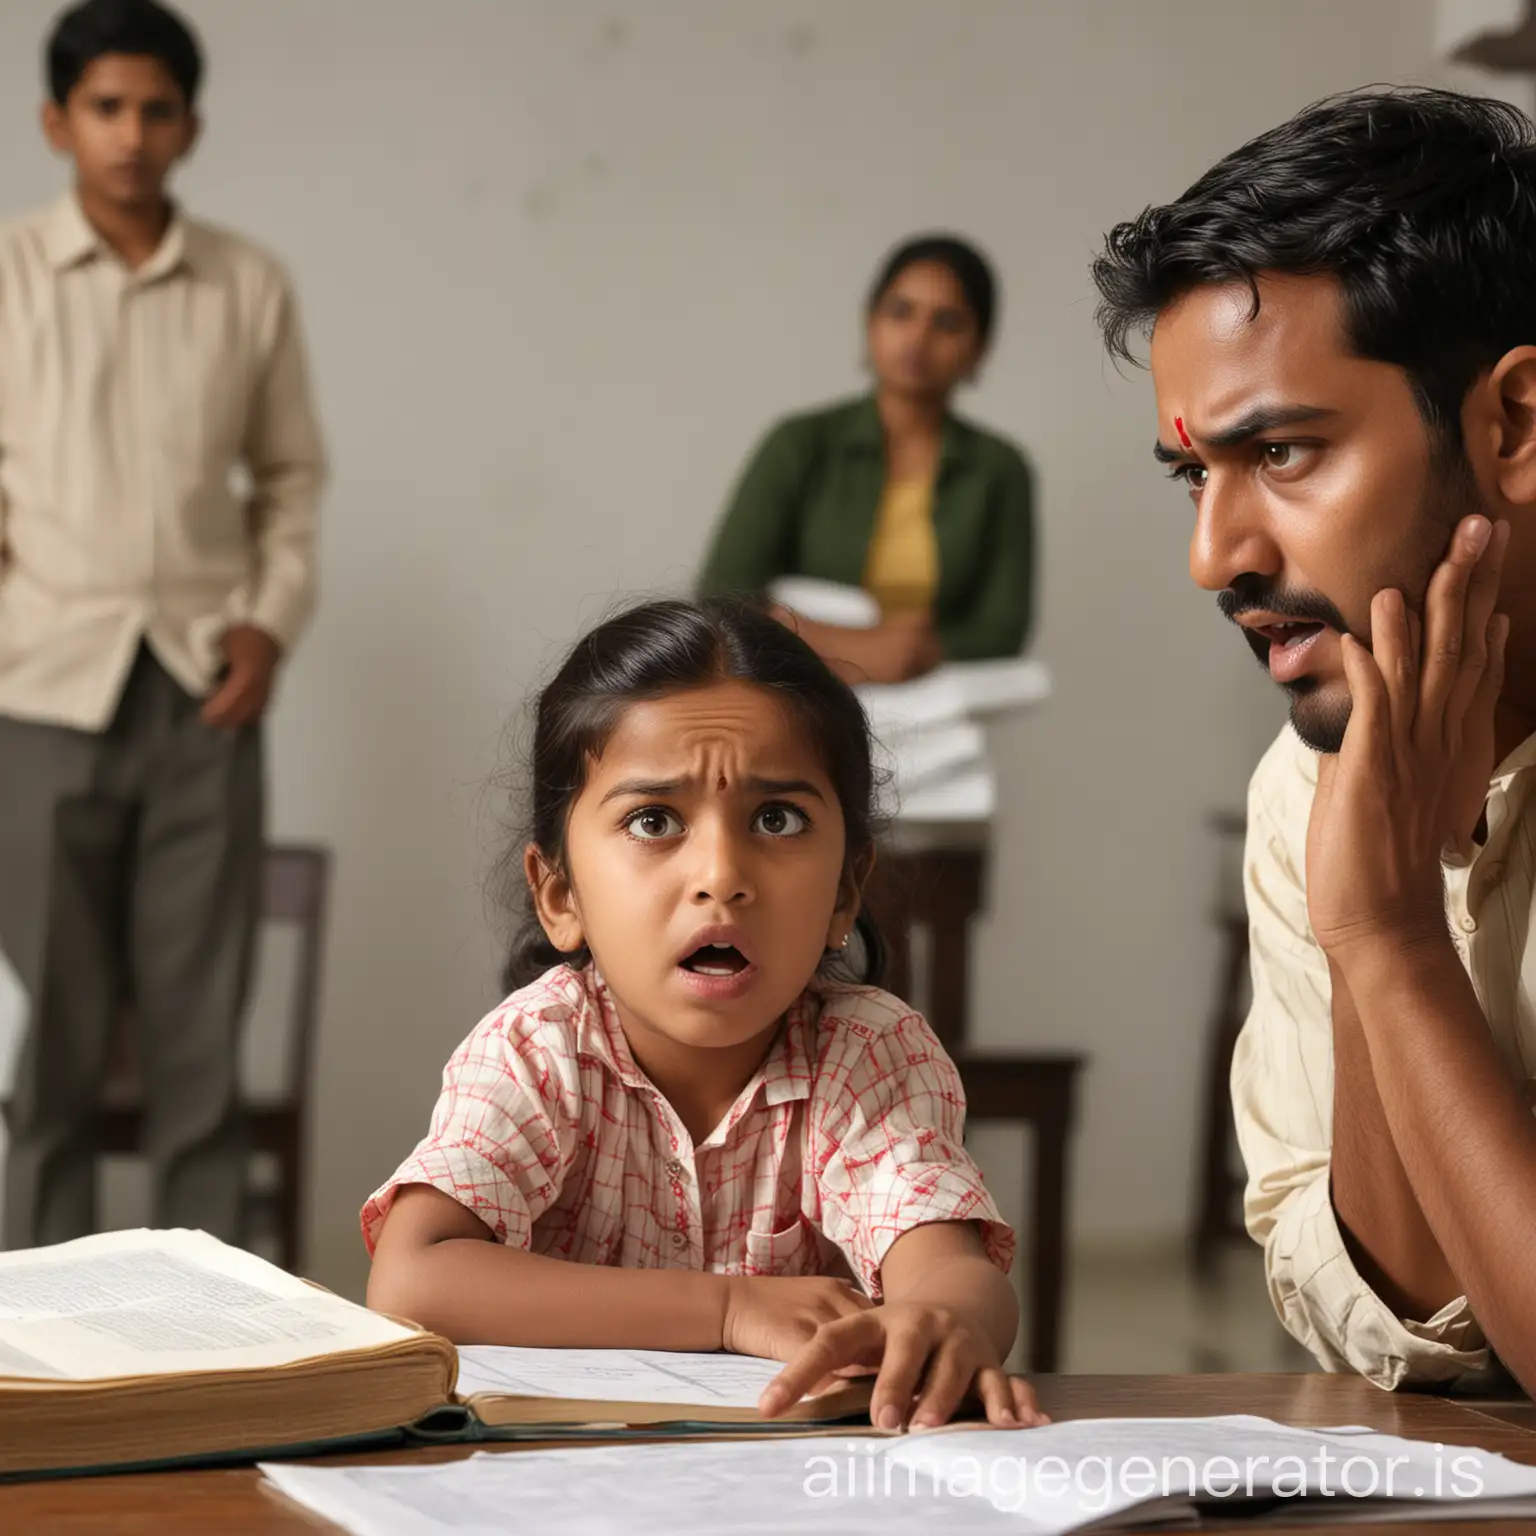 印度人面孔，父亲和母亲在后边对着争吵，孩子在前景学习，孩子痛苦的表情